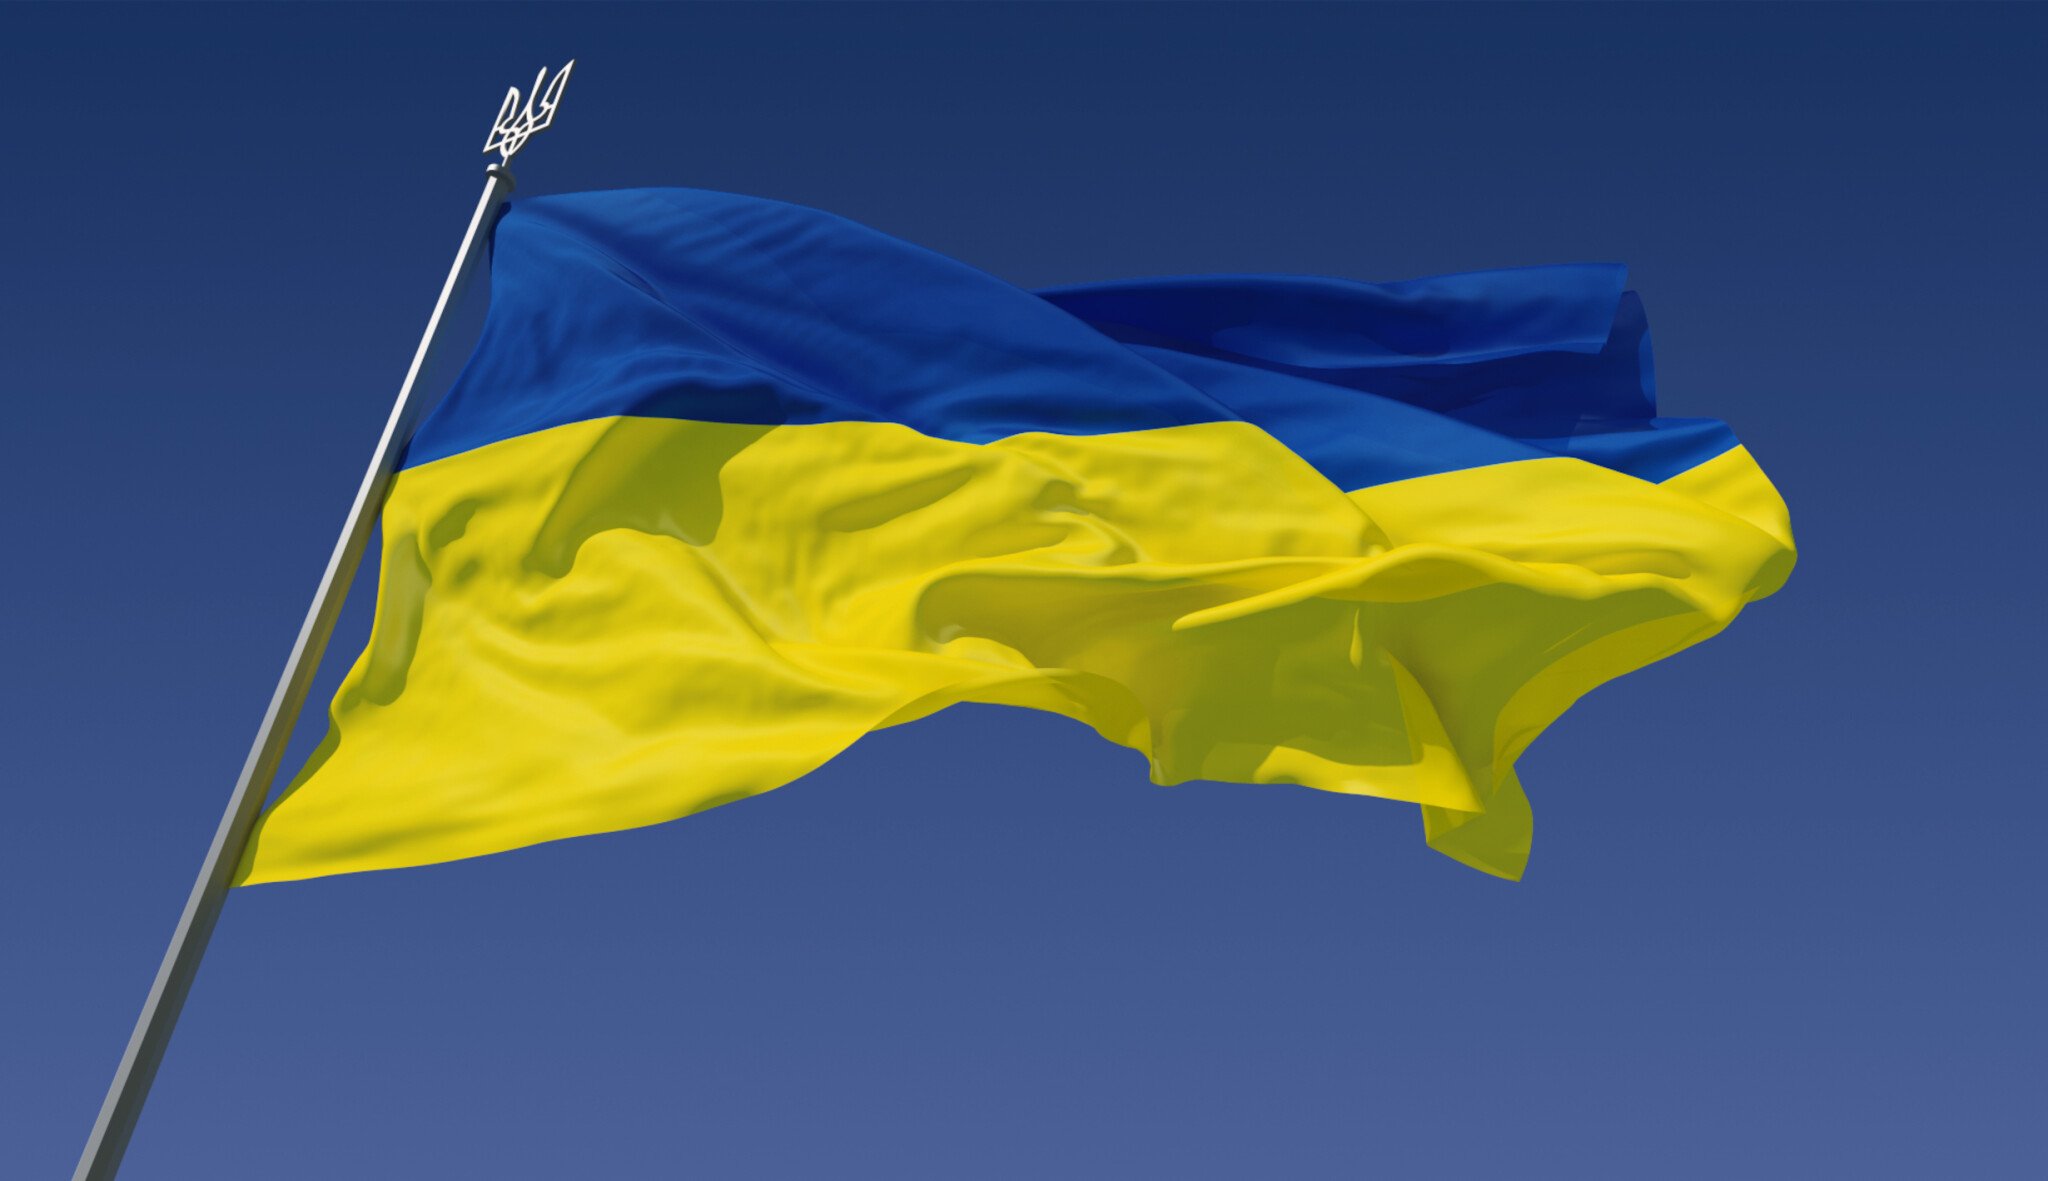 České společnosti vyjadřují podporu Ukrajině. Bojkotují ruské banky a ruší spolupráci